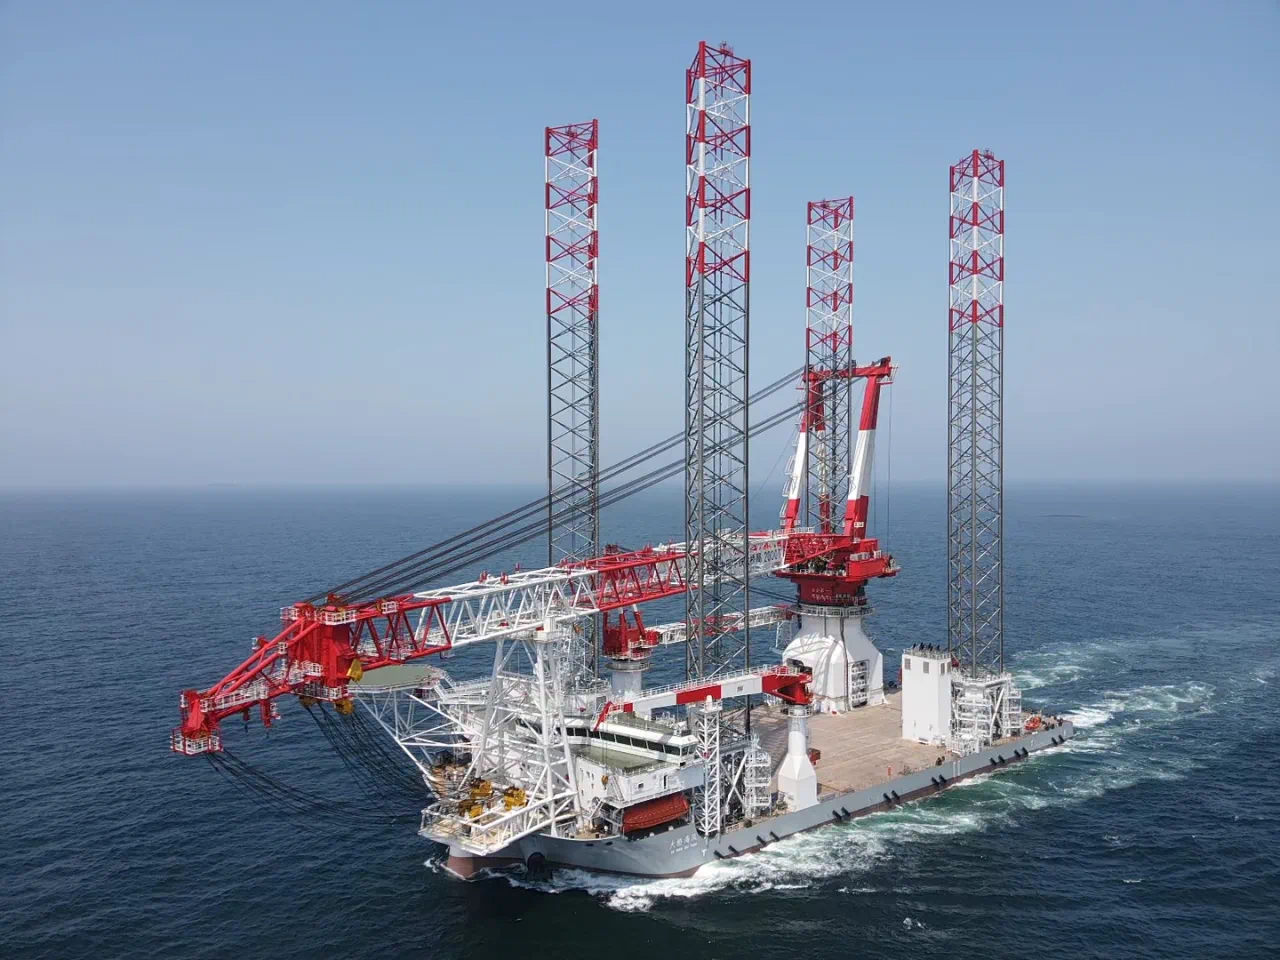 2000吨自升式海上风电安装平台——“大桥海风”号。中铁大桥局供图